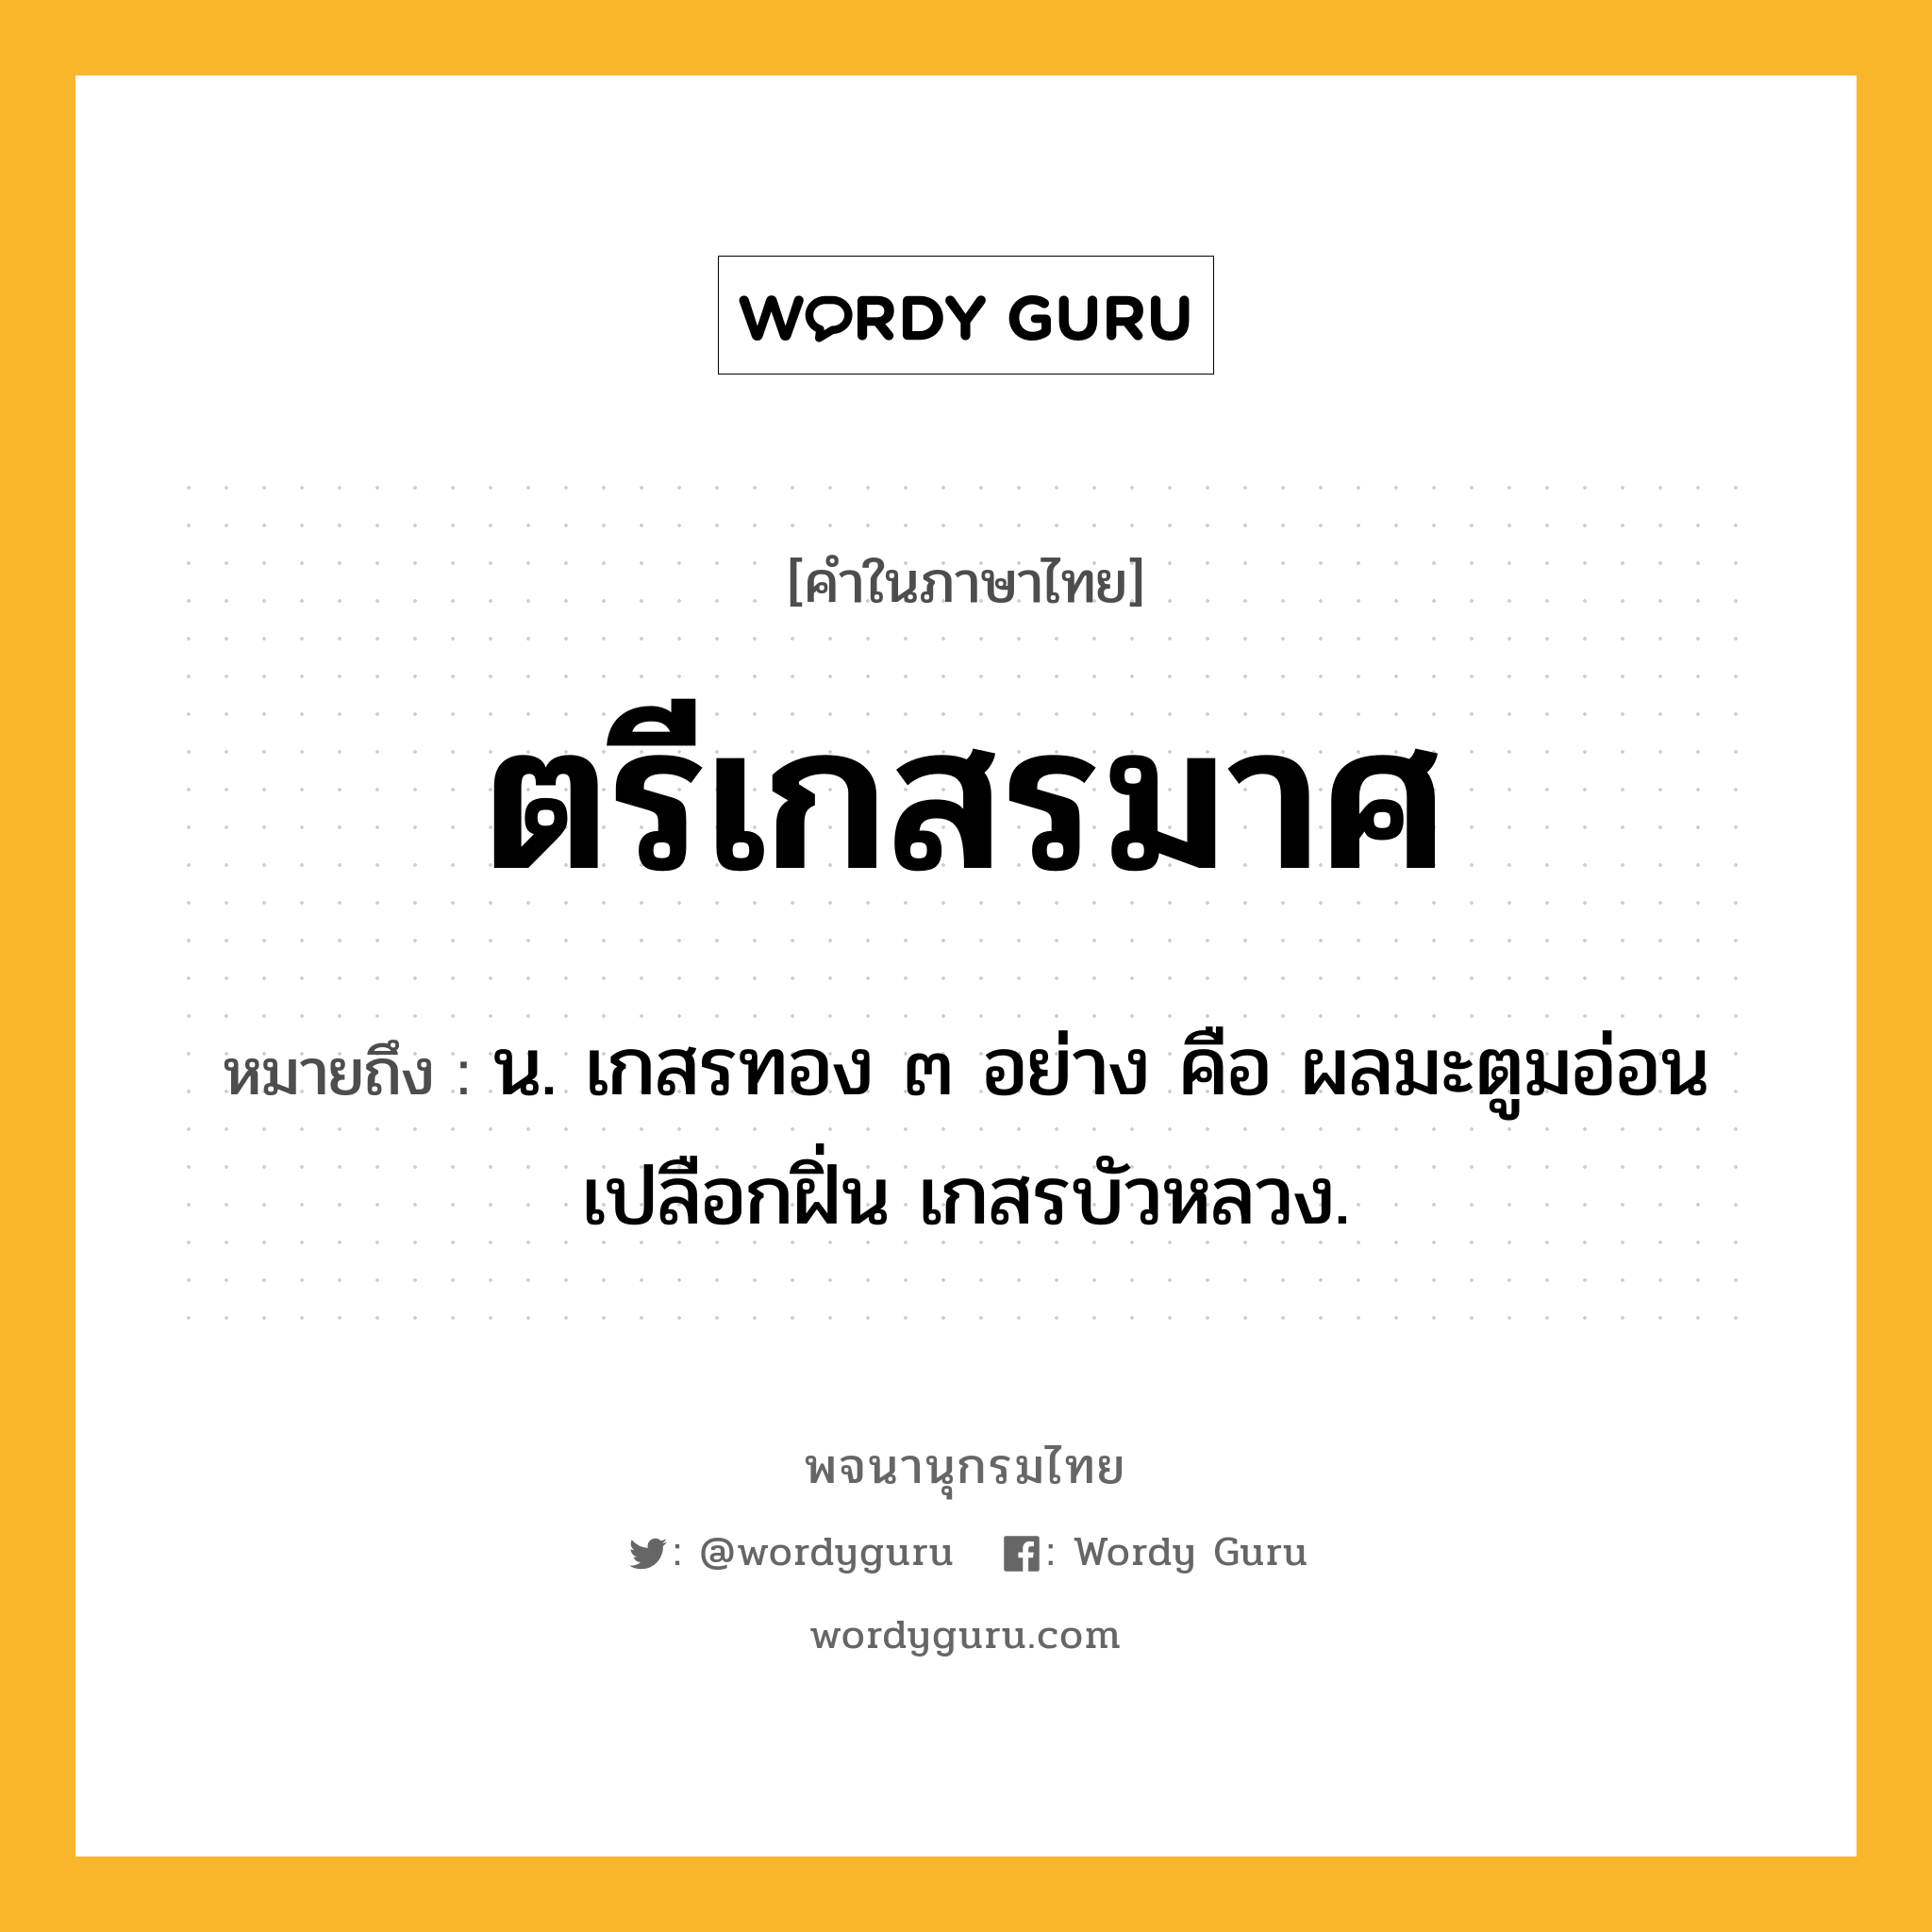 ตรีเกสรมาศ ความหมาย หมายถึงอะไร?, คำในภาษาไทย ตรีเกสรมาศ หมายถึง น. เกสรทอง ๓ อย่าง คือ ผลมะตูมอ่อน เปลือกฝิ่น เกสรบัวหลวง.